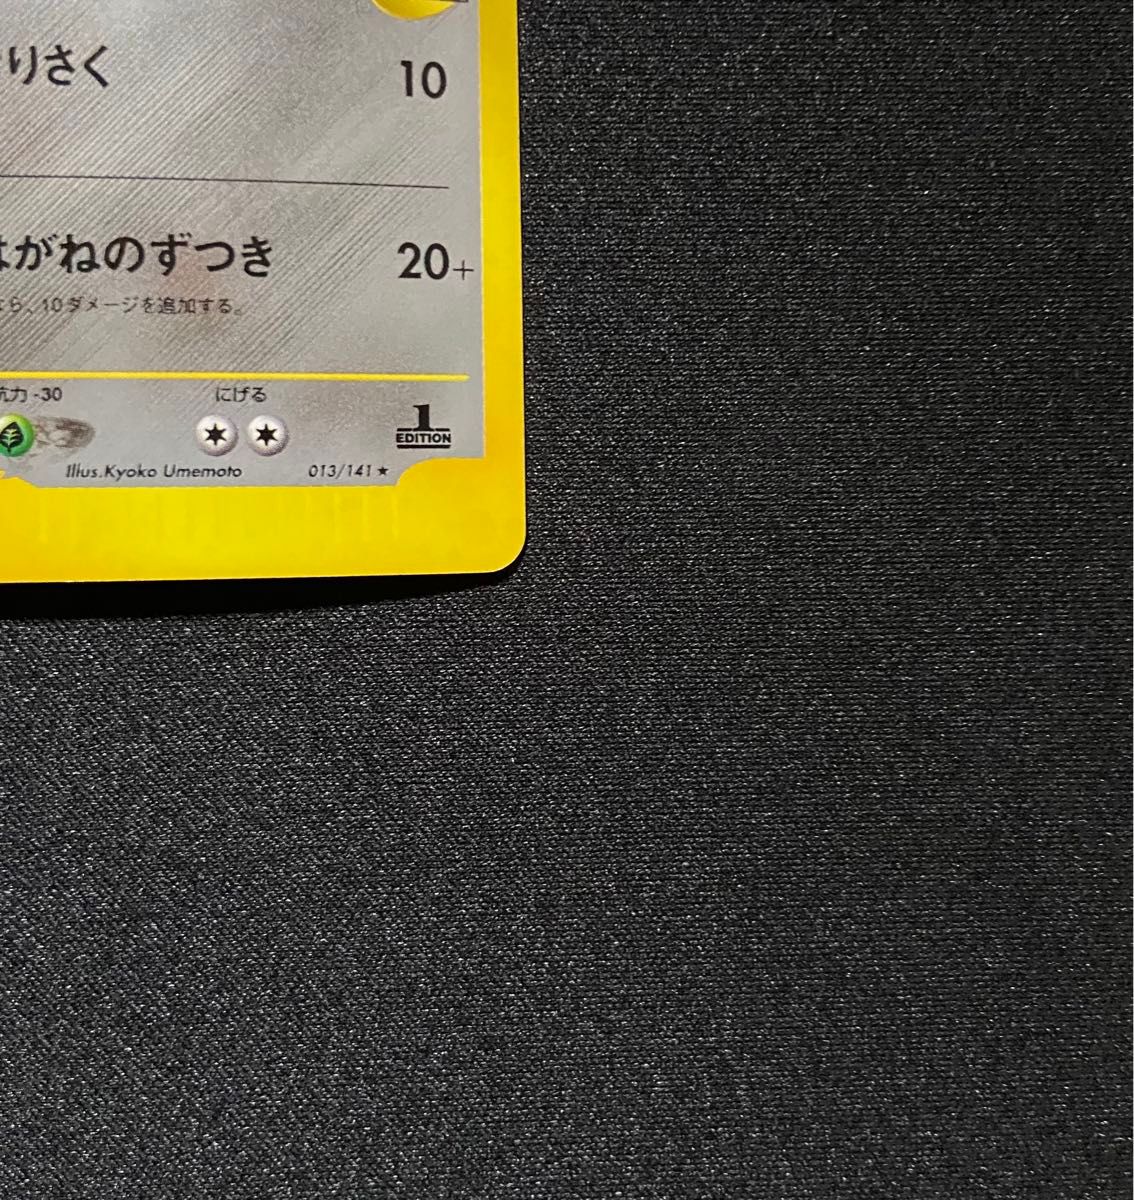 最新人気 ツクシのハッサム 1ED VS 013/141 ibloom.ne.jp